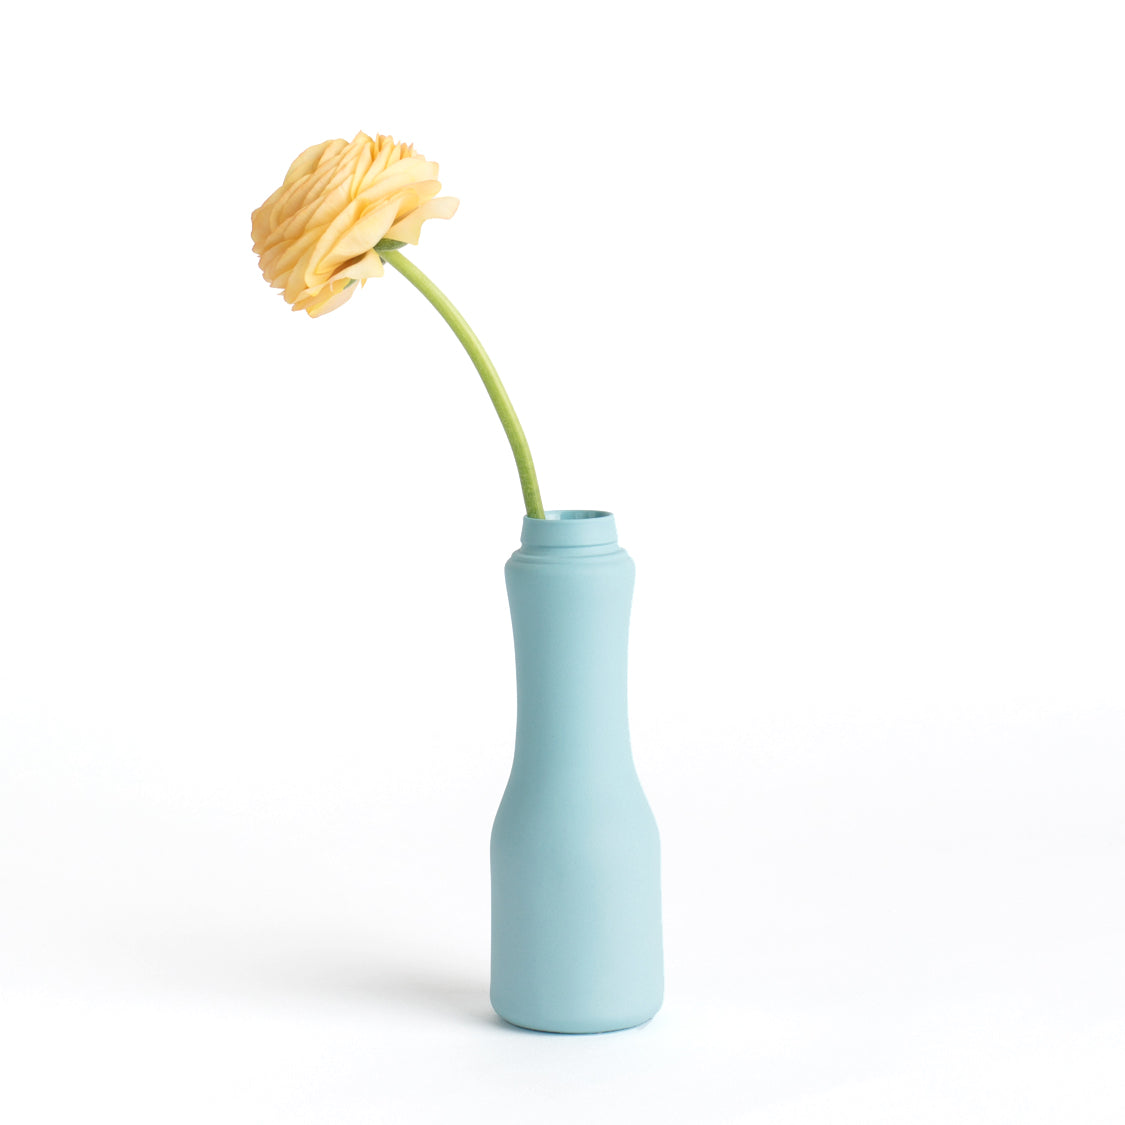 Porzellan-Vase #6 von Foekje Fleur bei Wilhelm die 3.